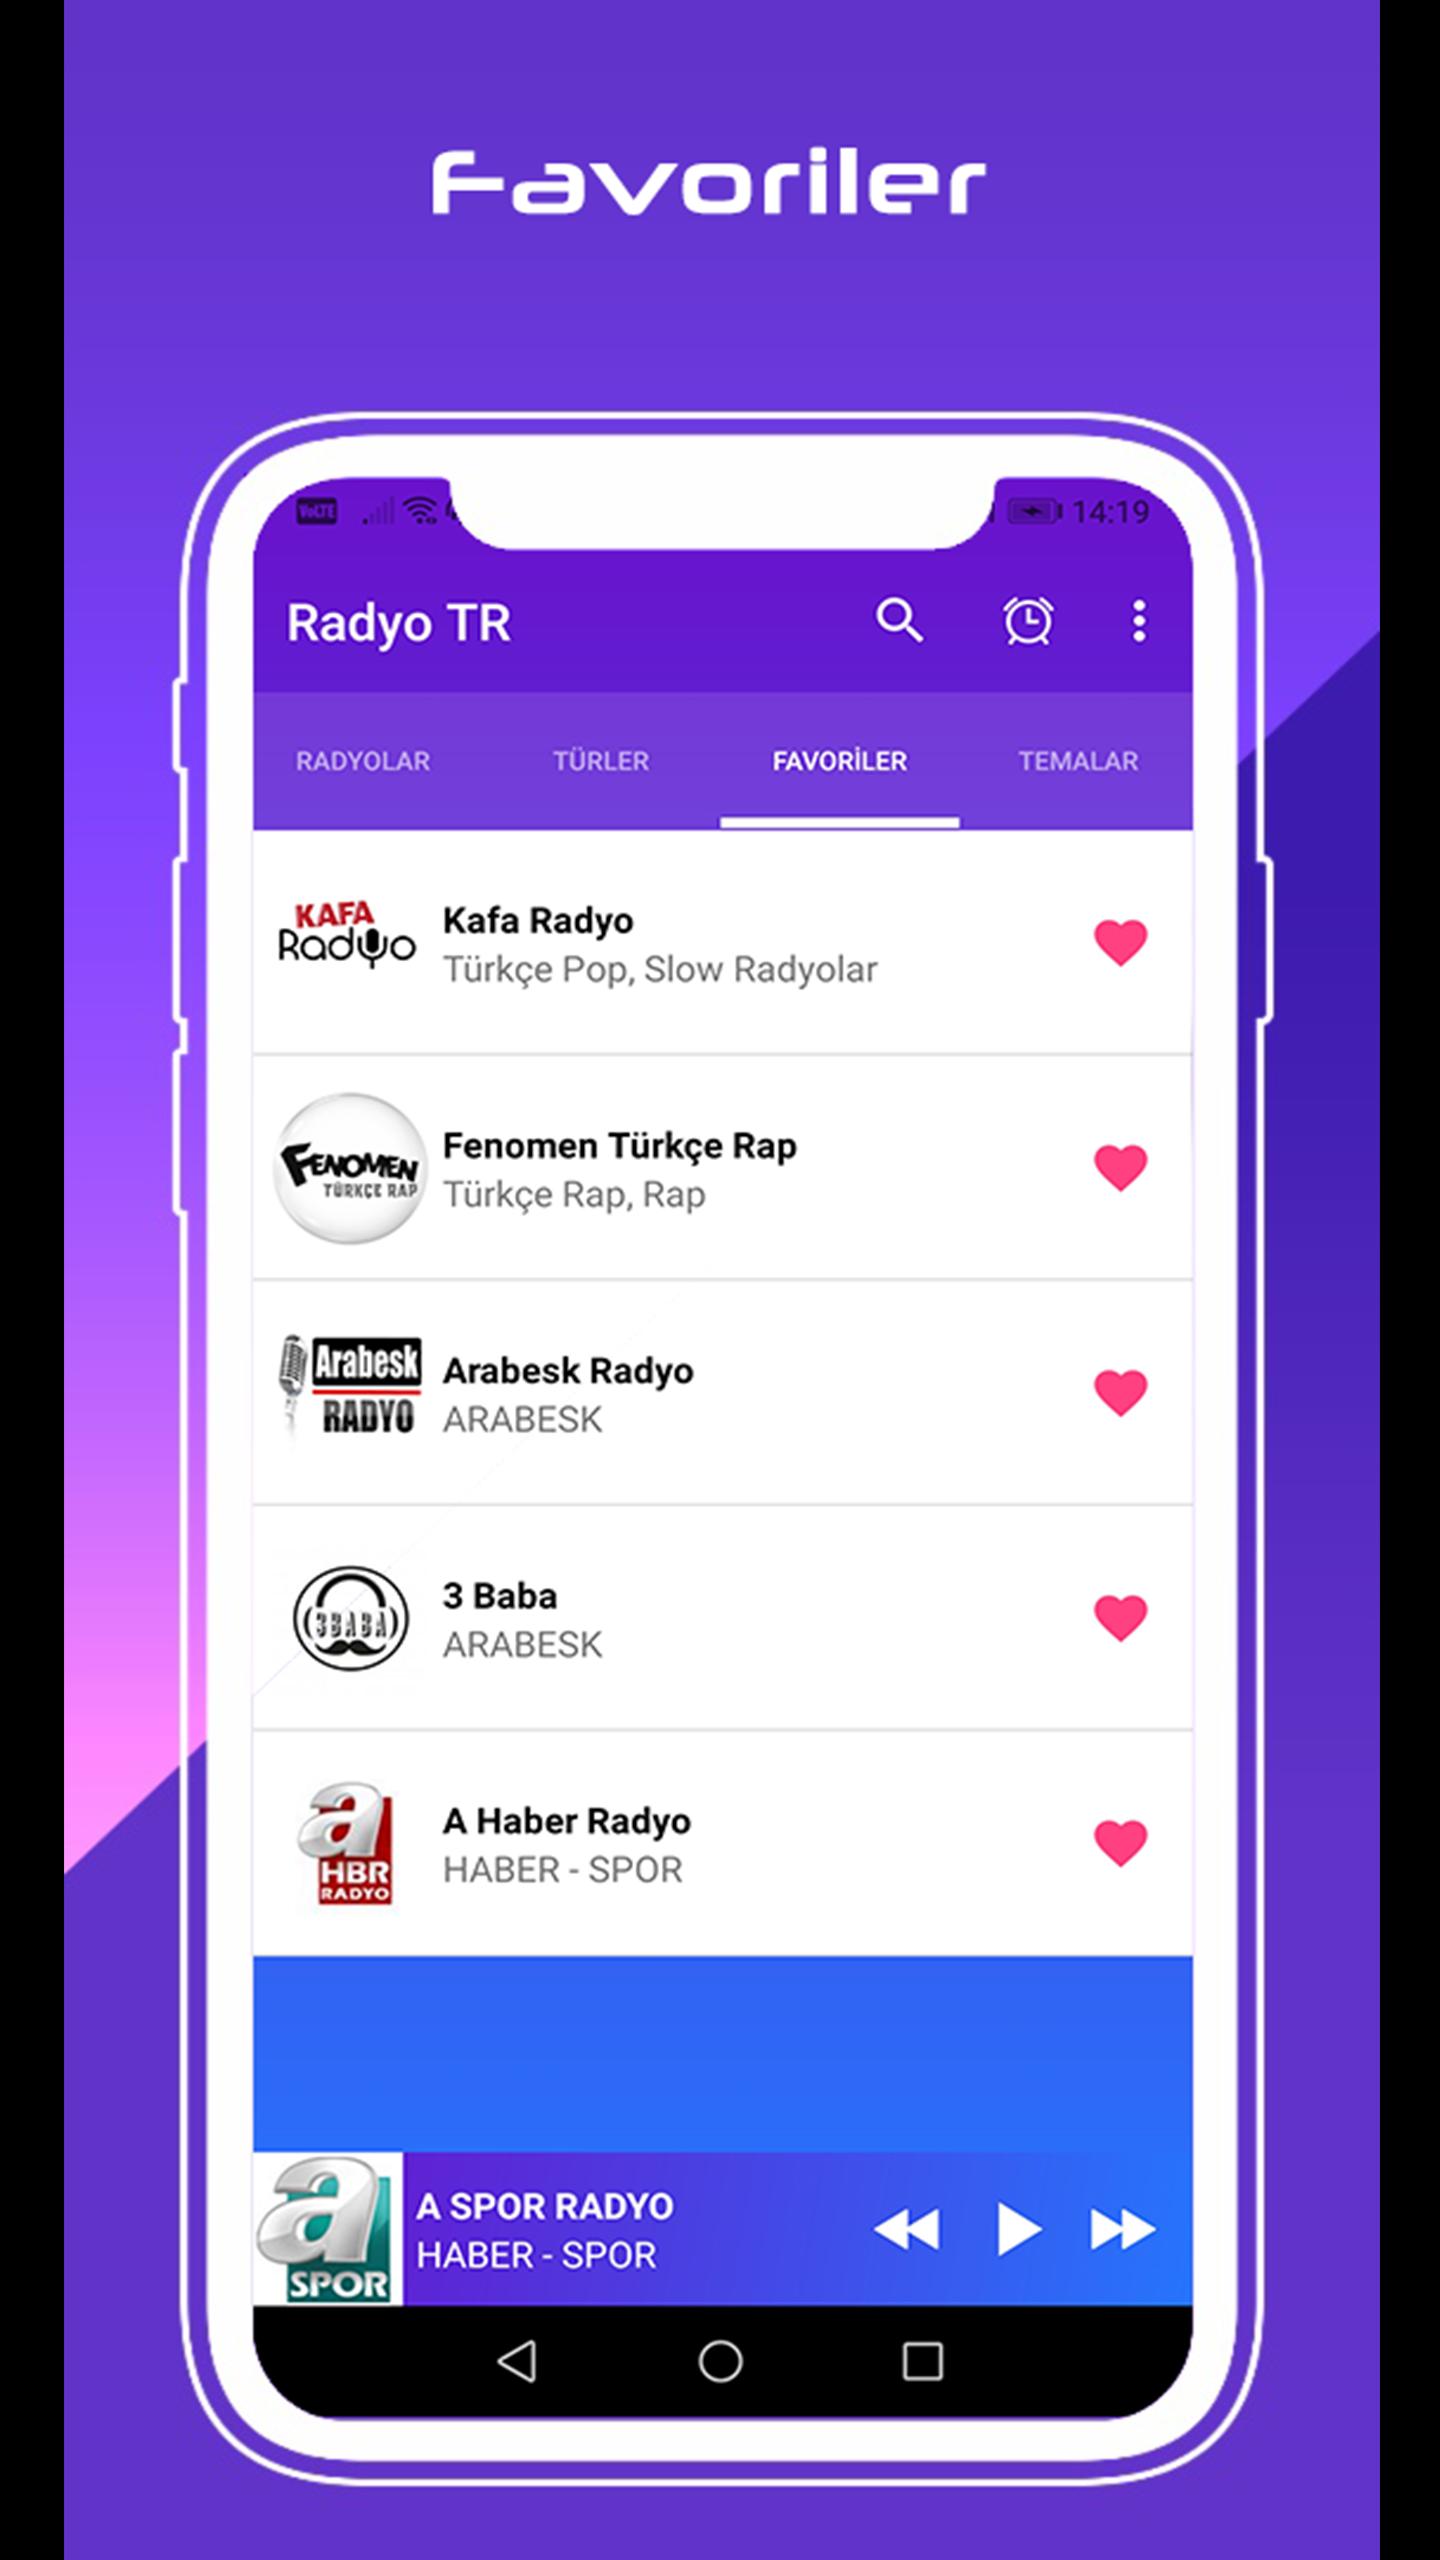 Radyo Frekans - Tüm Radyolar Canlı Radyo Dinle for Android - APK Download